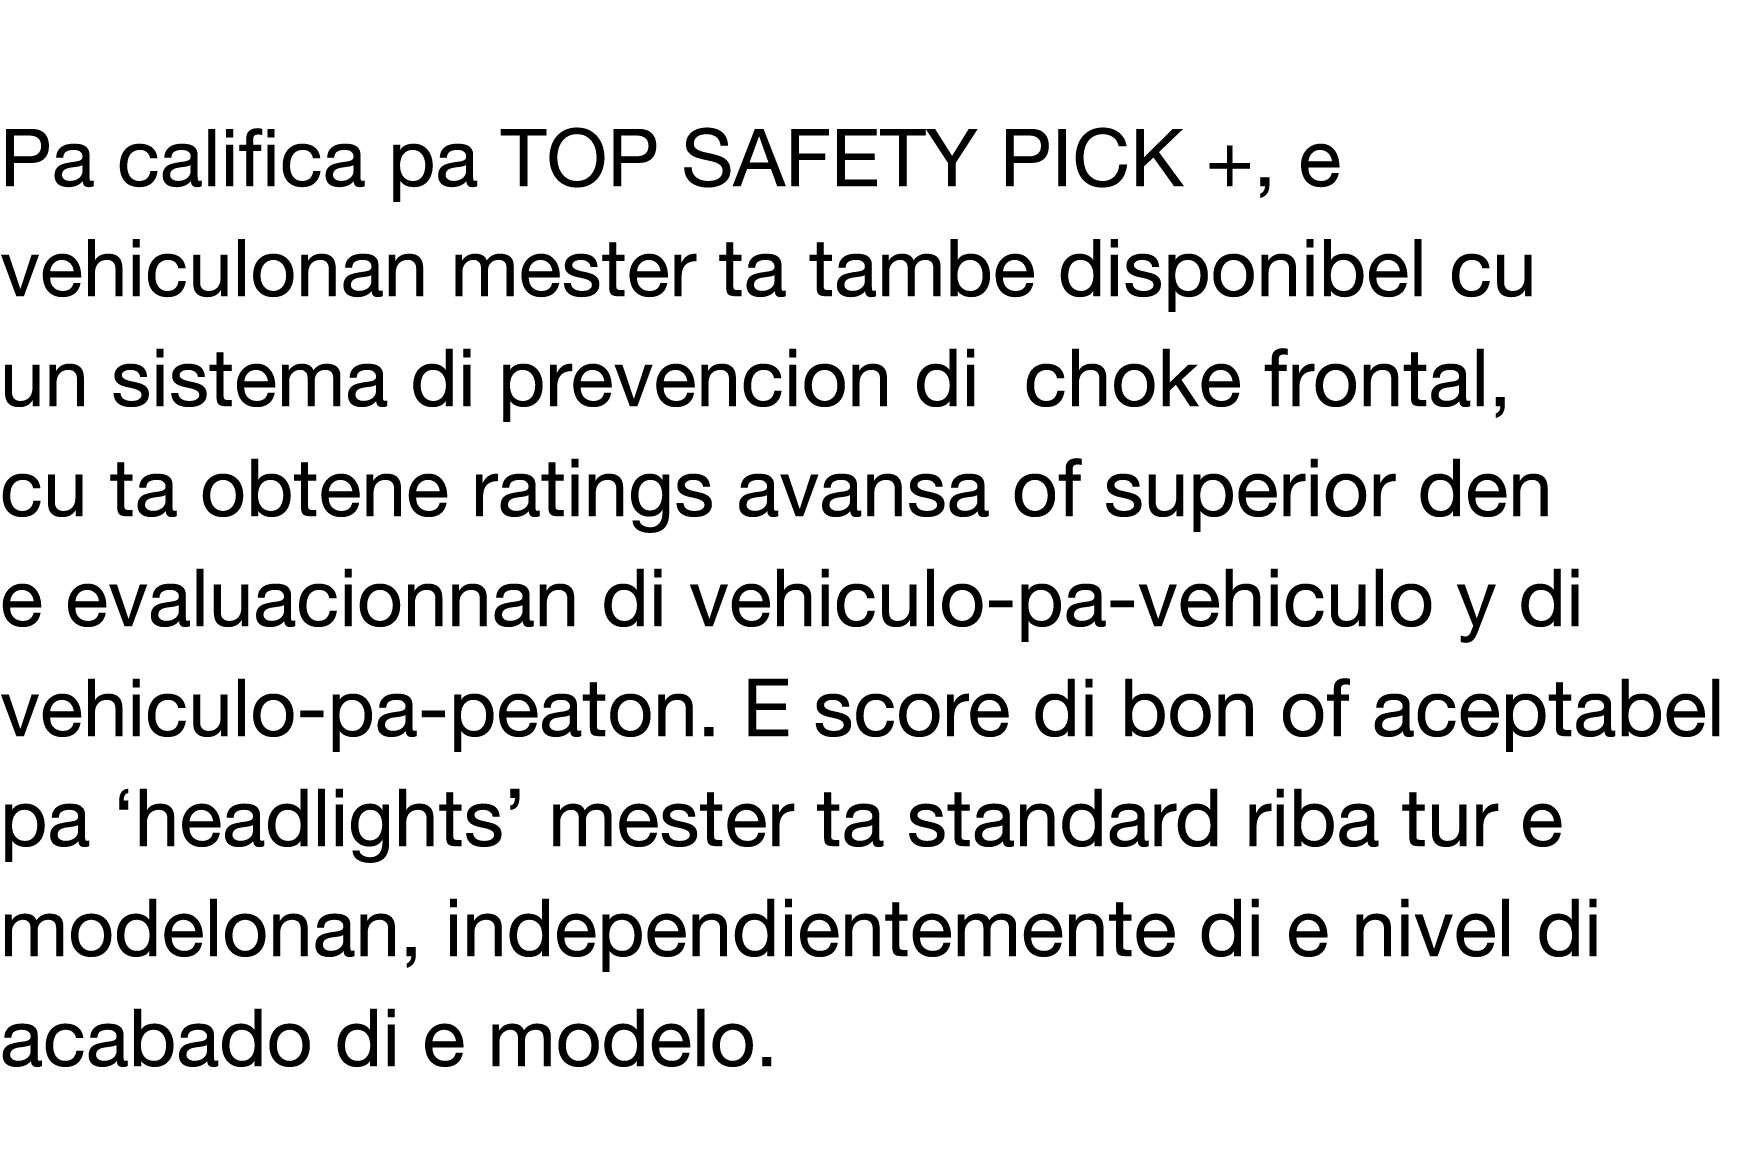  Pa califica pa TOP SAFETY PICK +, e vehiculonan mester ta tambe disponibel cu un sistema di prevencion di choke fron   